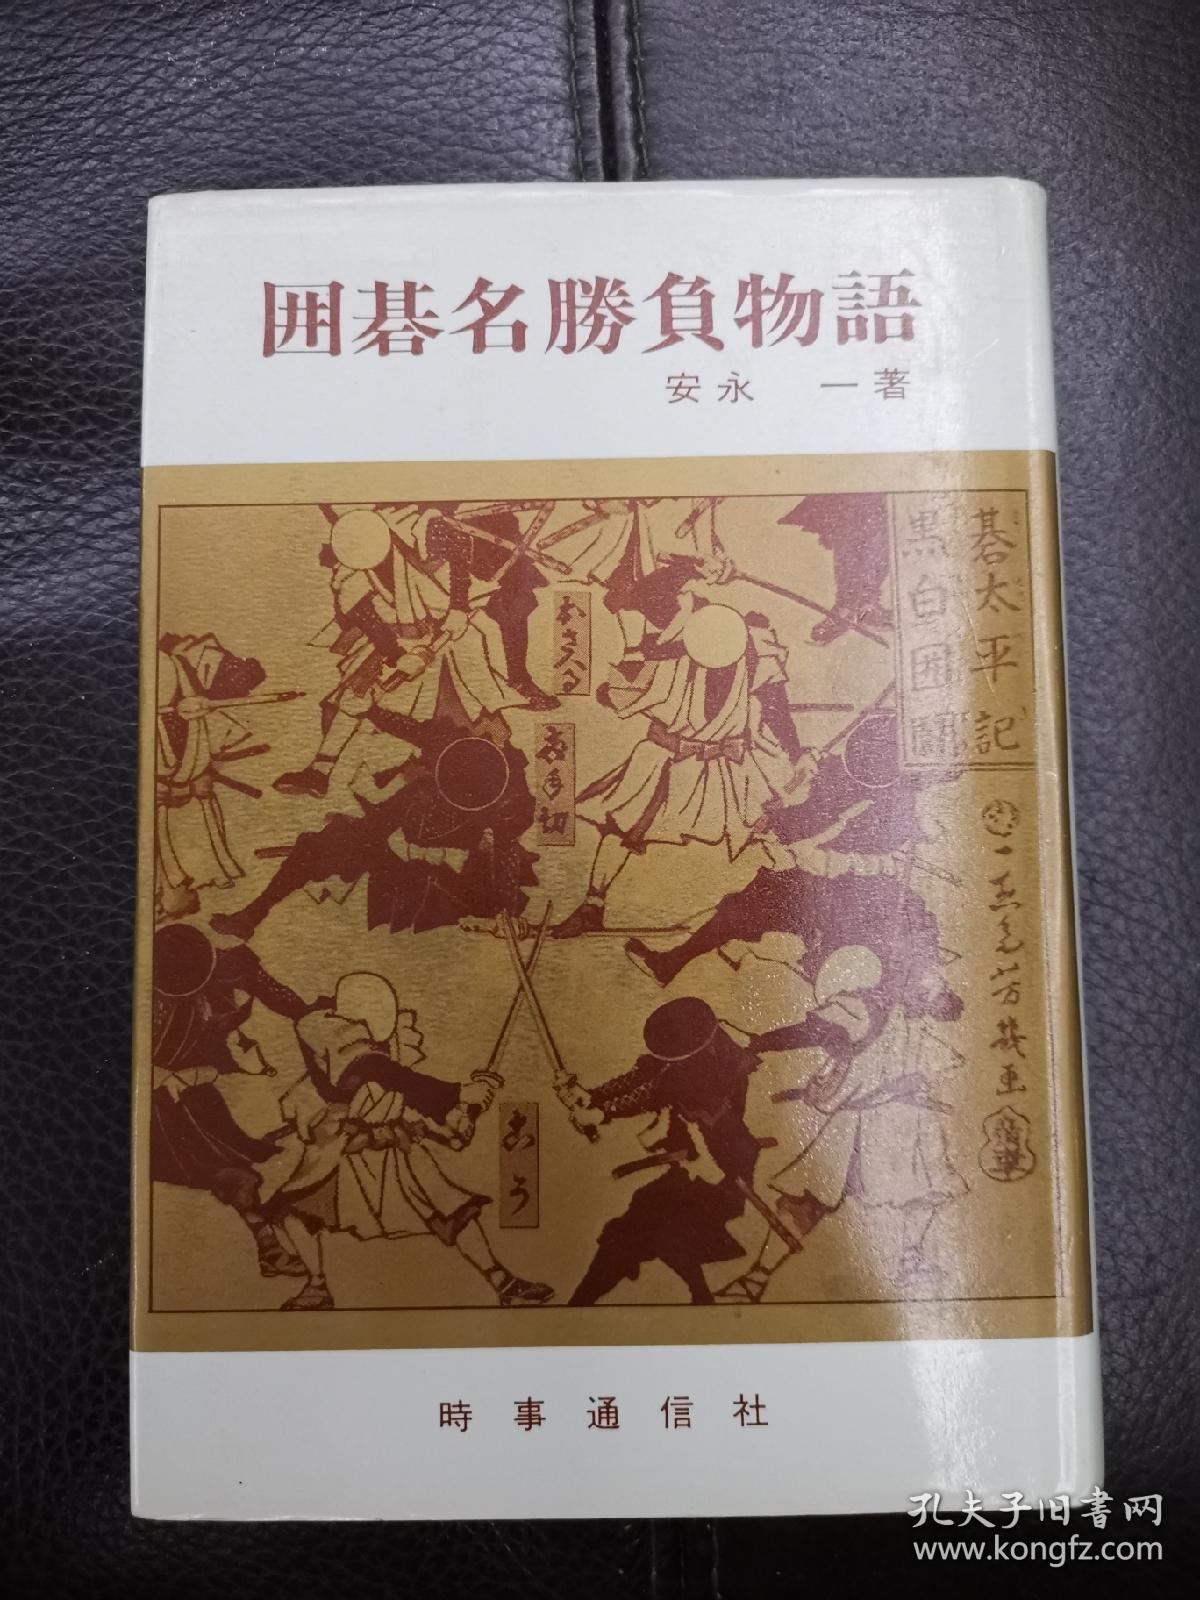 日本回流、日文原版精美围棋书，《围棋名胜负物语》，大32开本圆背硬壳精装本，带原装书函，整体保存不错。